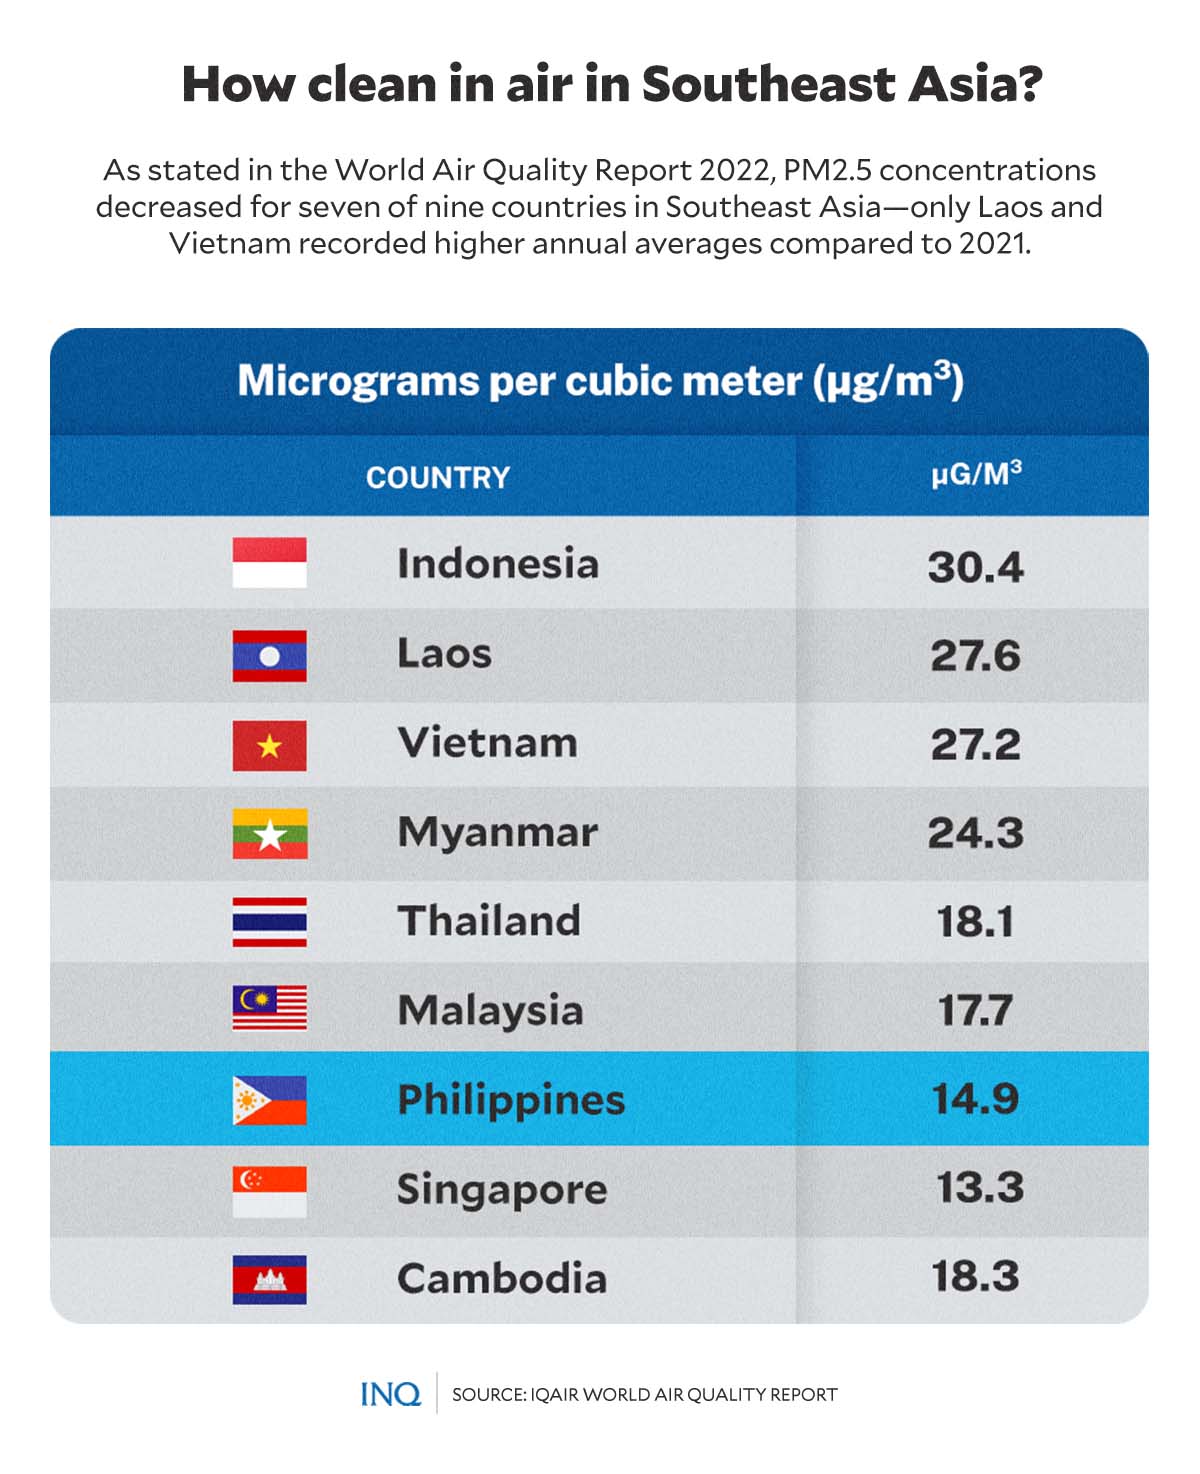 Micrograms per cubic meter